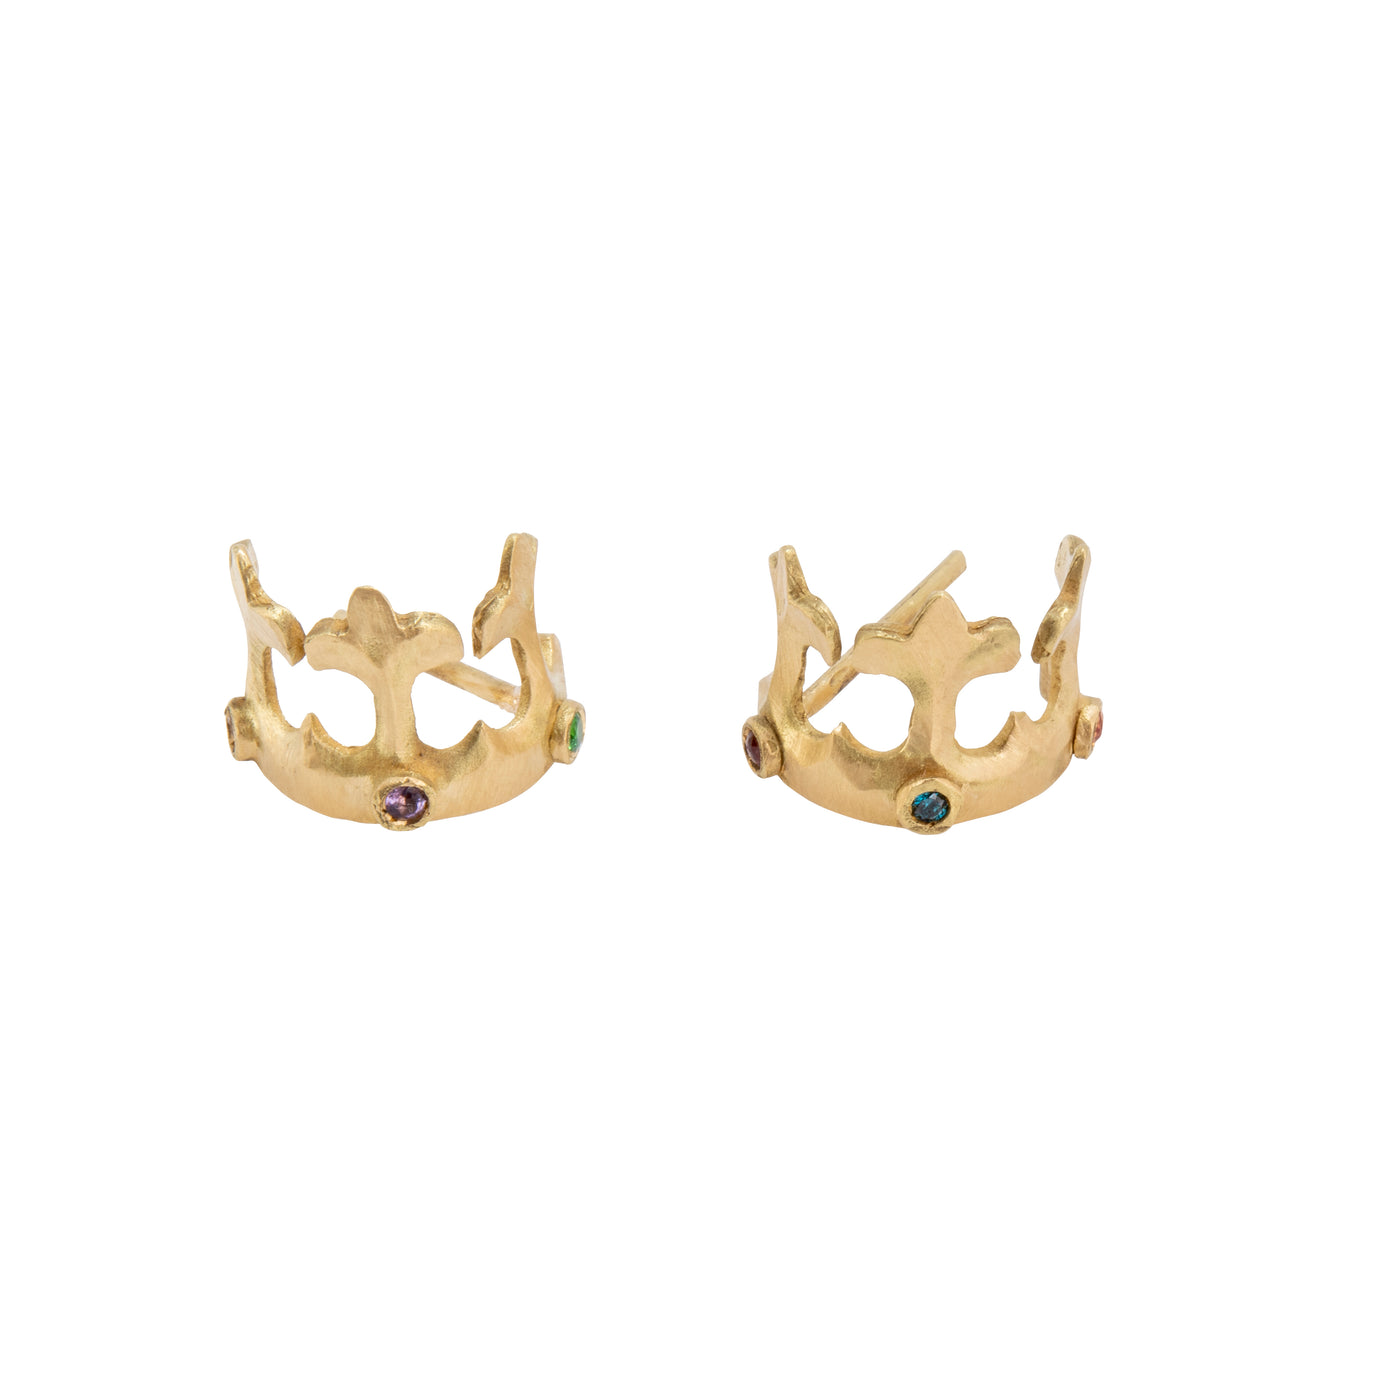 Crown Hoop Earrings - Joanna Peters - Ileana Makri store